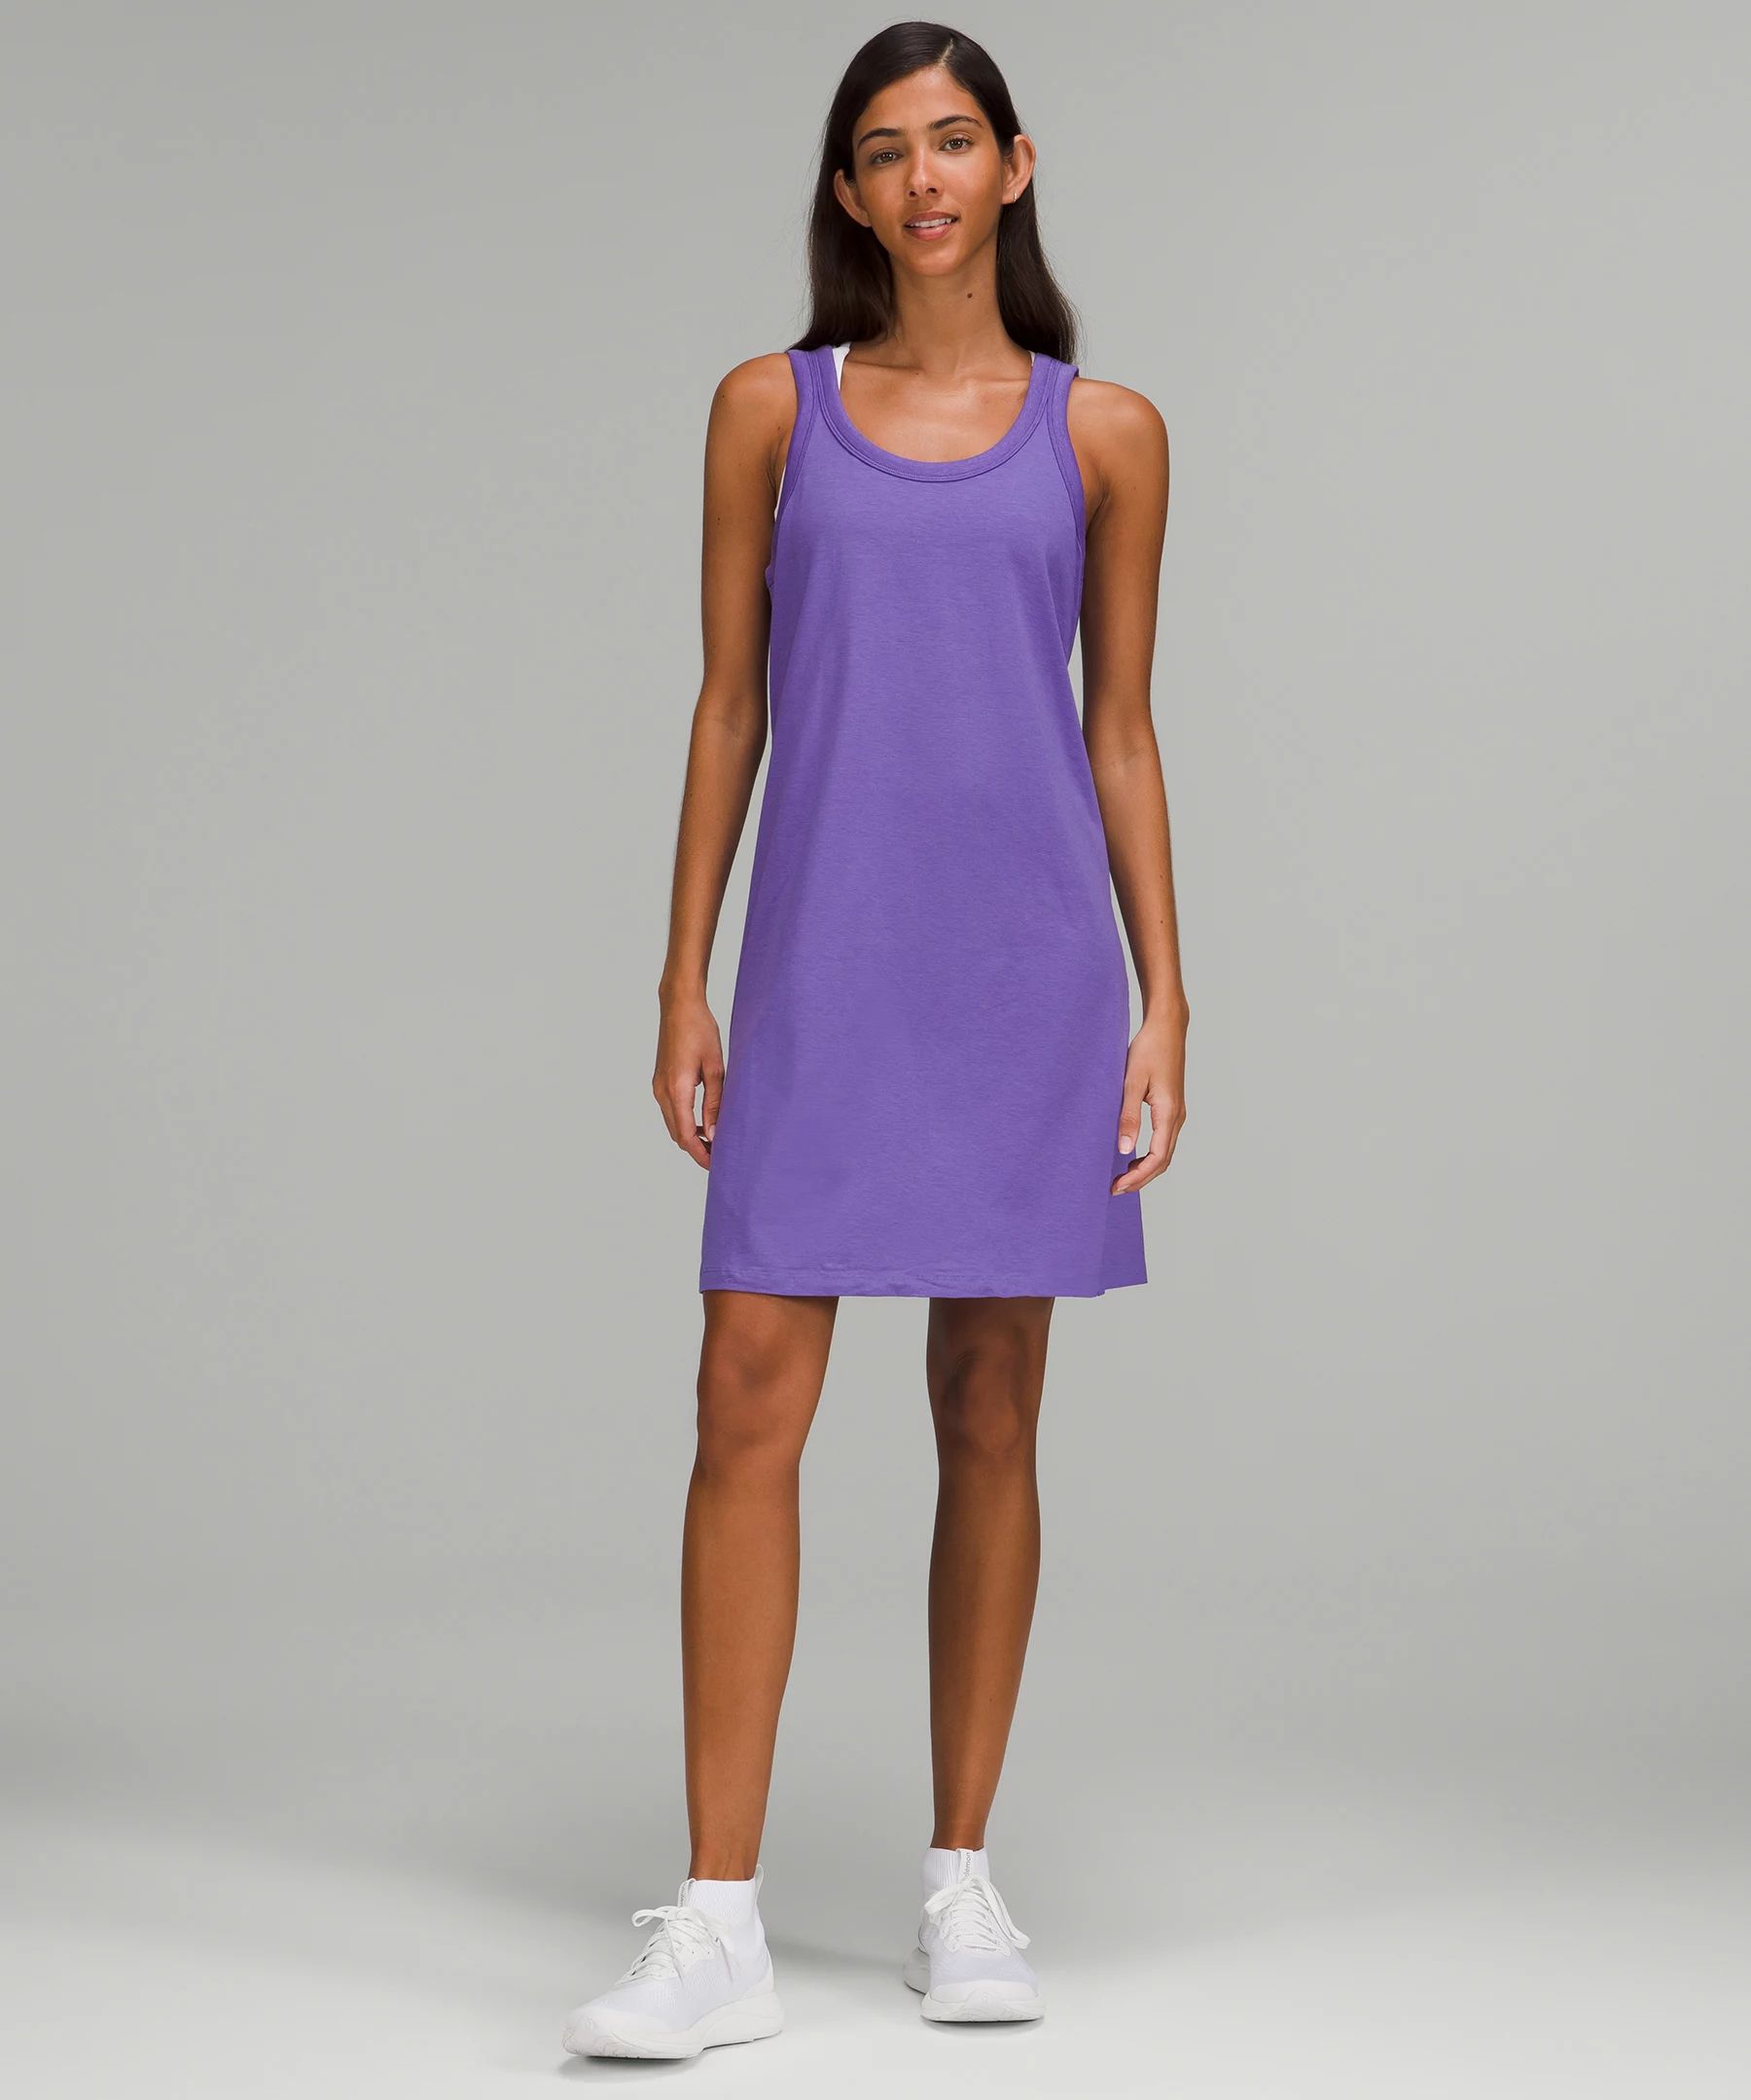 Classic-Fit Cotton-Blend Scoop Dress | Lululemon (US)